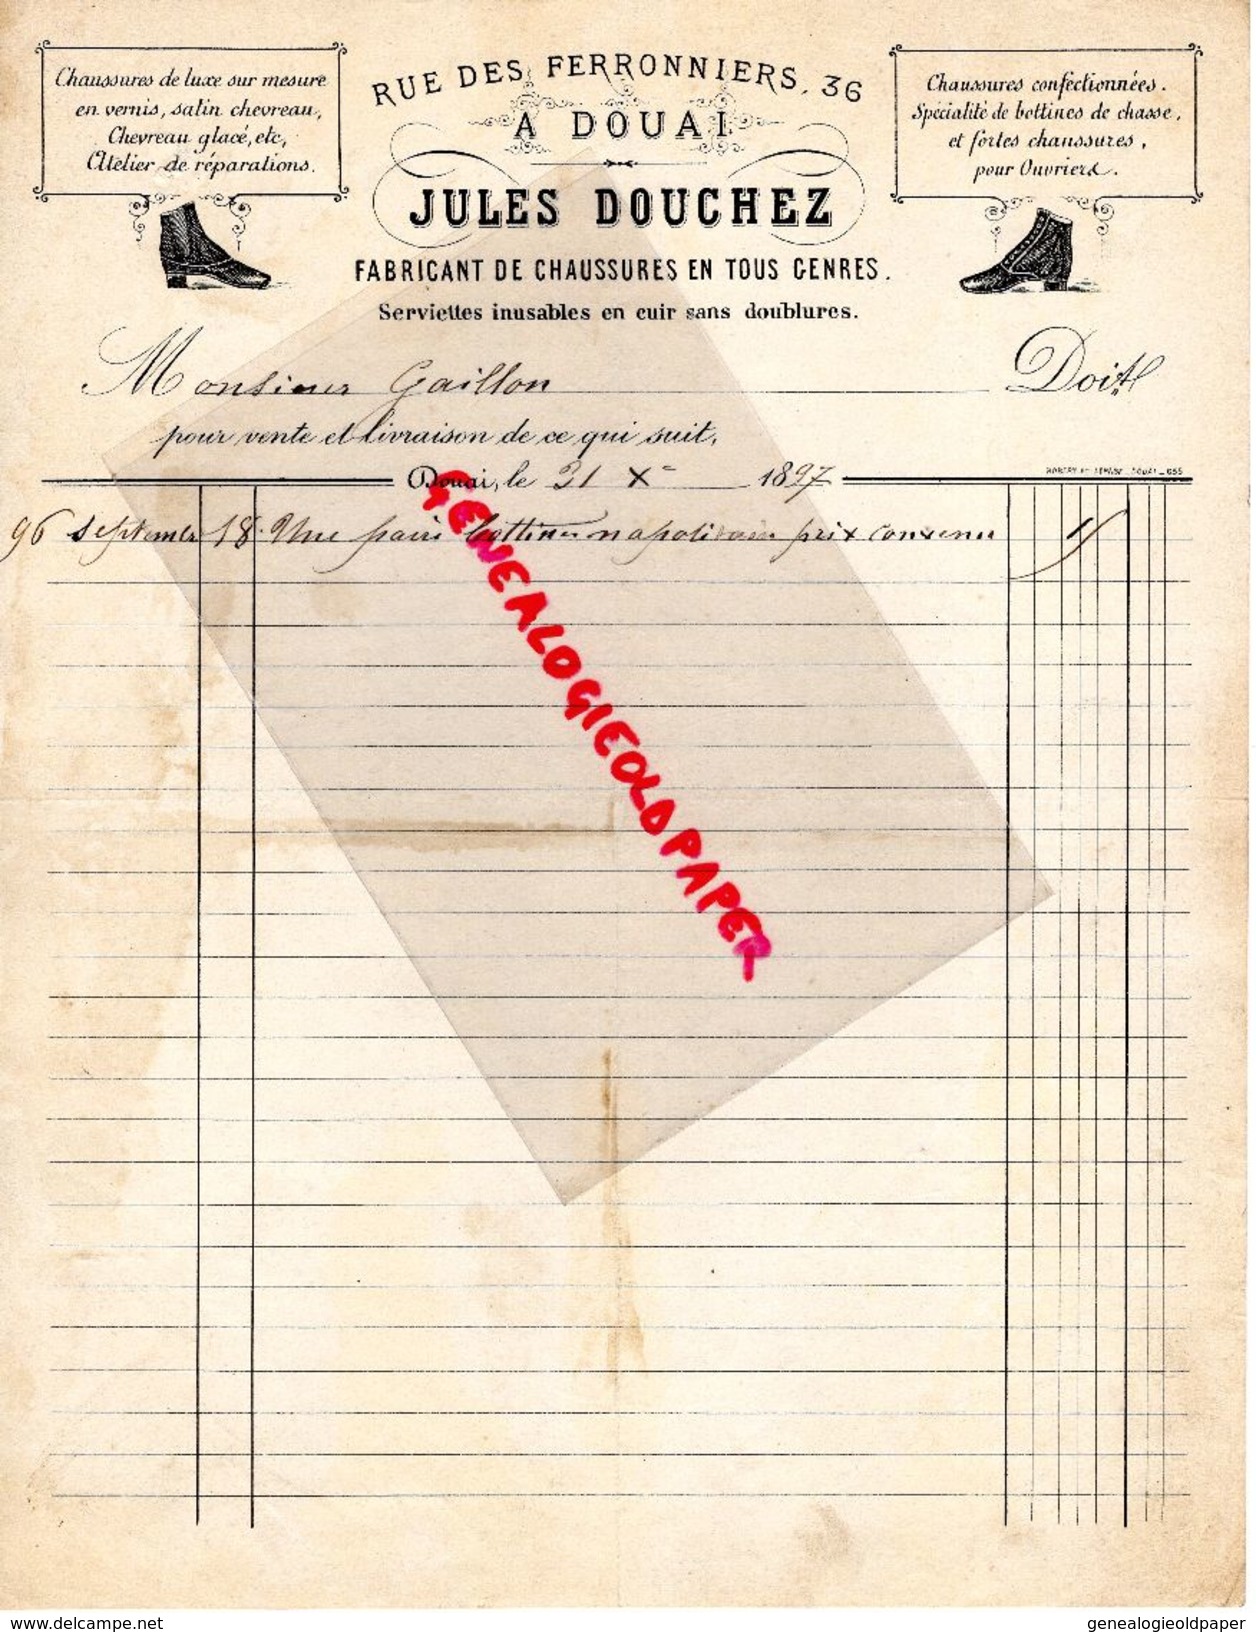 62- DOUAI- RARE FACTURE 1897- JULES DOUCHEZ- FABRICANT CHAUSSURES-BOTTINES DE CHASSE-36 RUE DES FERRONNIERS-1897 - 1800 – 1899